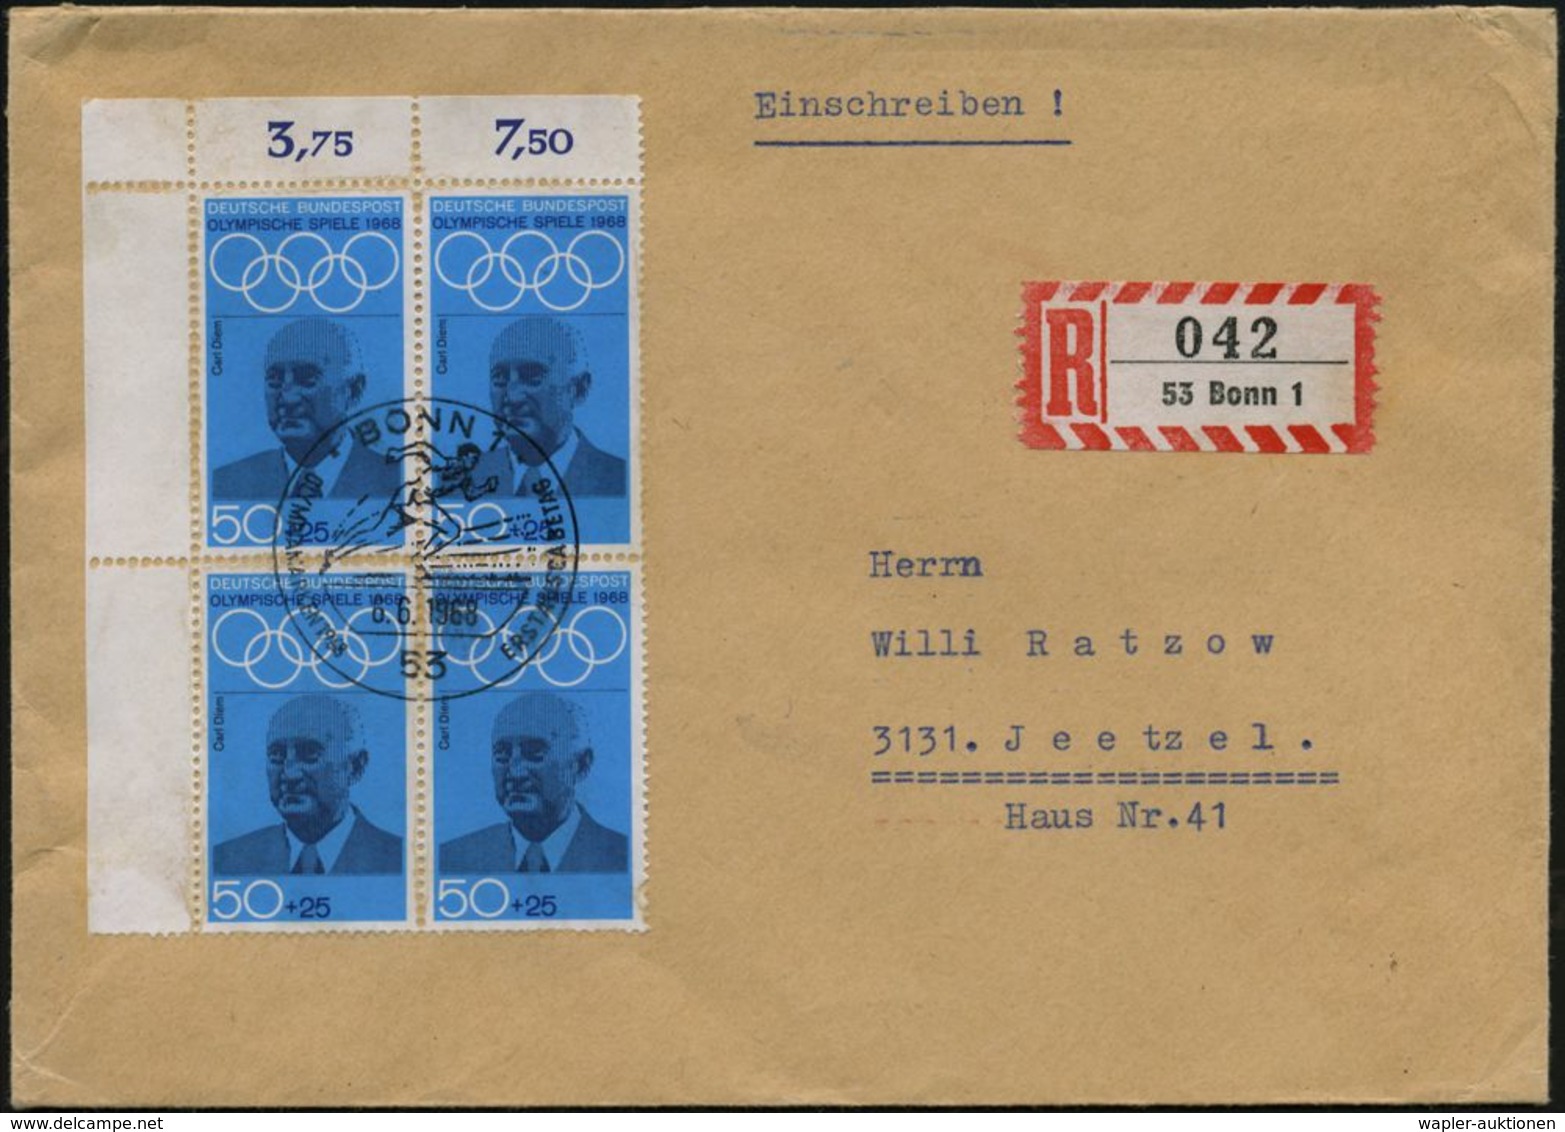 B.R.D. 1968 (6.6.) 50 + 25 Pf. Carl Diem, Bogen-Eckrand-4er-Block = Erfinder Der Olymp. Fackellaufes, Organisator Der Ol - Verano 1972: Munich